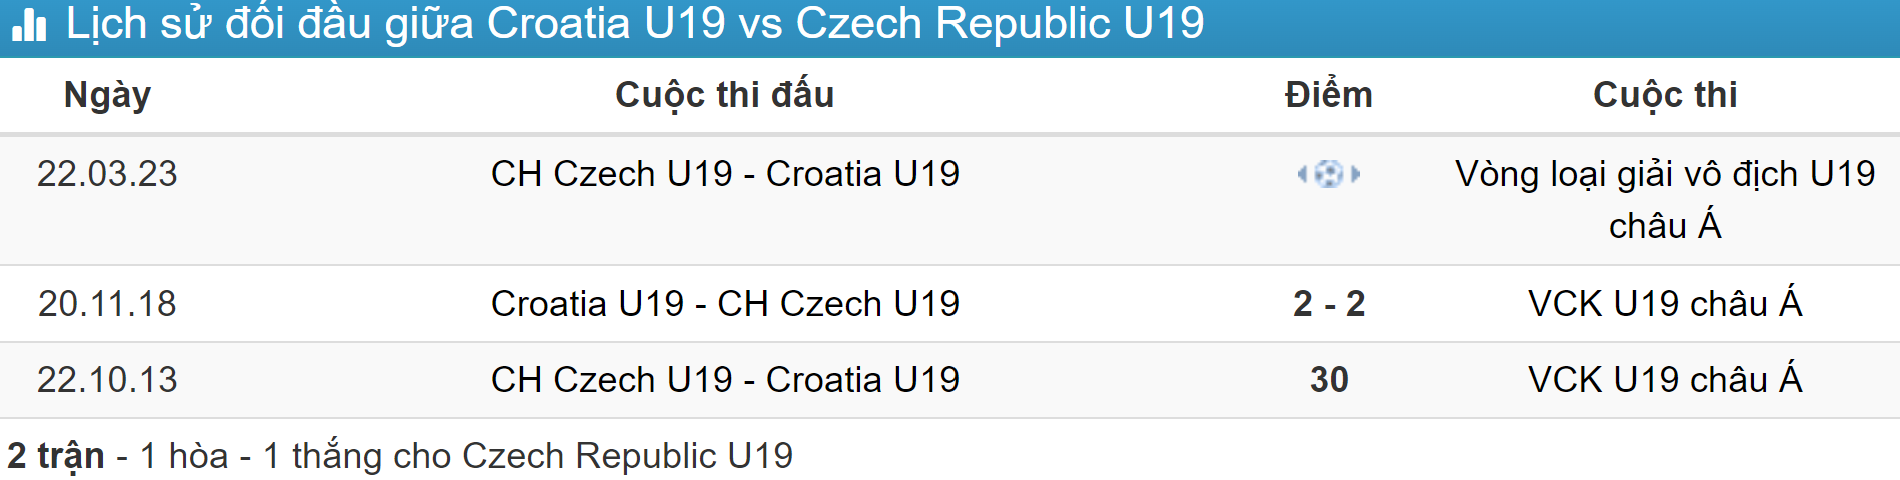 Kết quả lịch sử đối đầu Czech Republic U19 vs Croatia U19